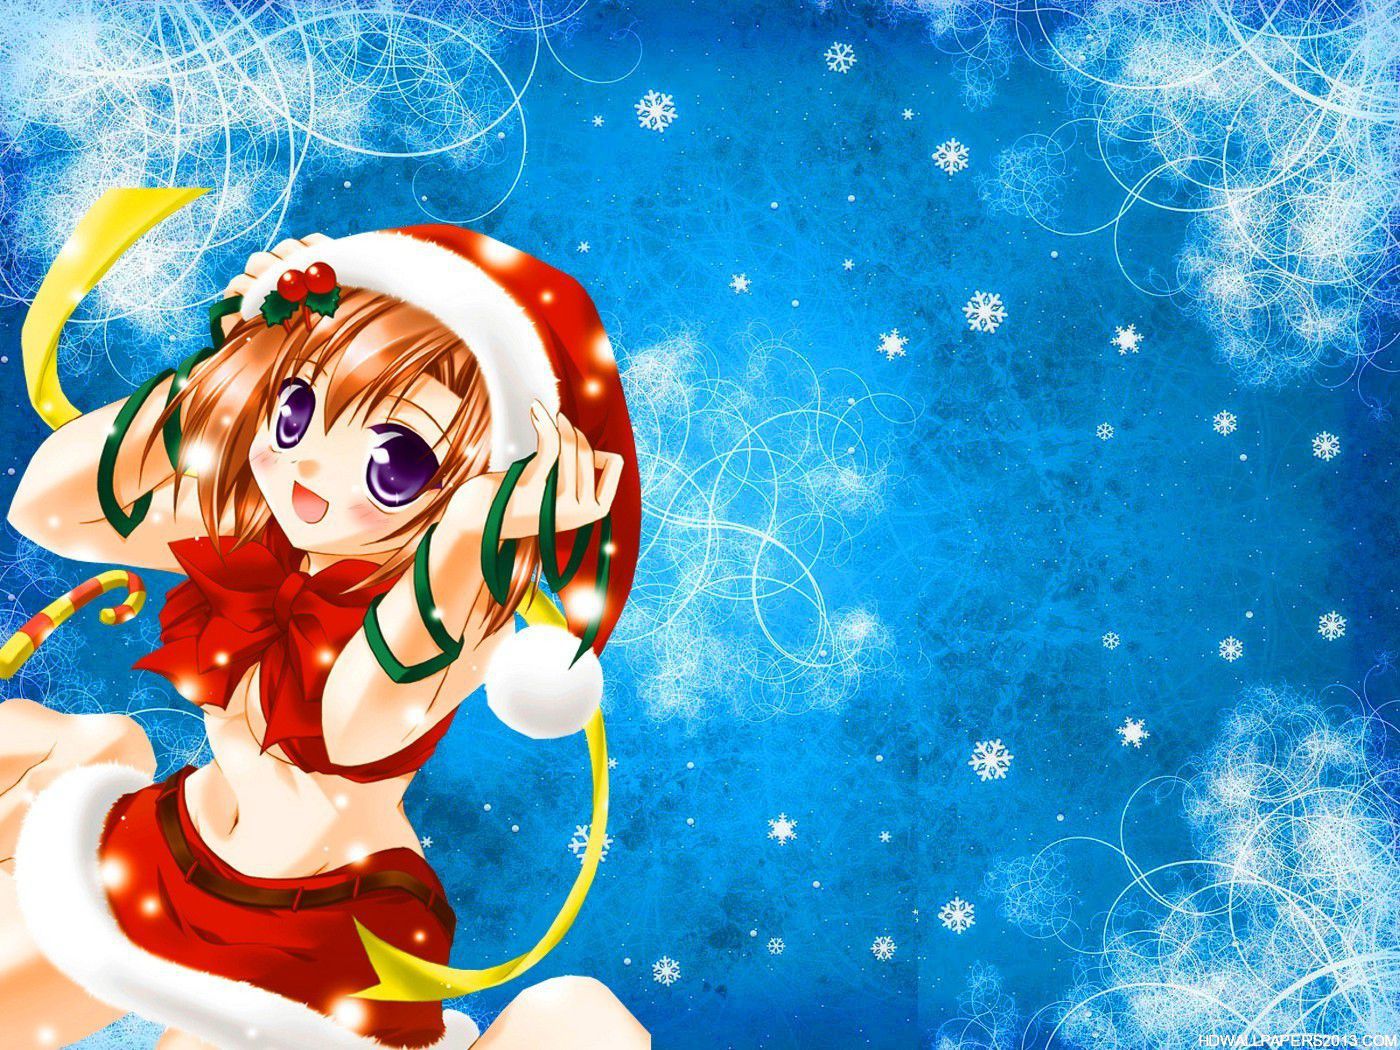 Hot Anime Girl Wallpapers Hd - Anime Girl Christmas Gif - HD Wallpaper 